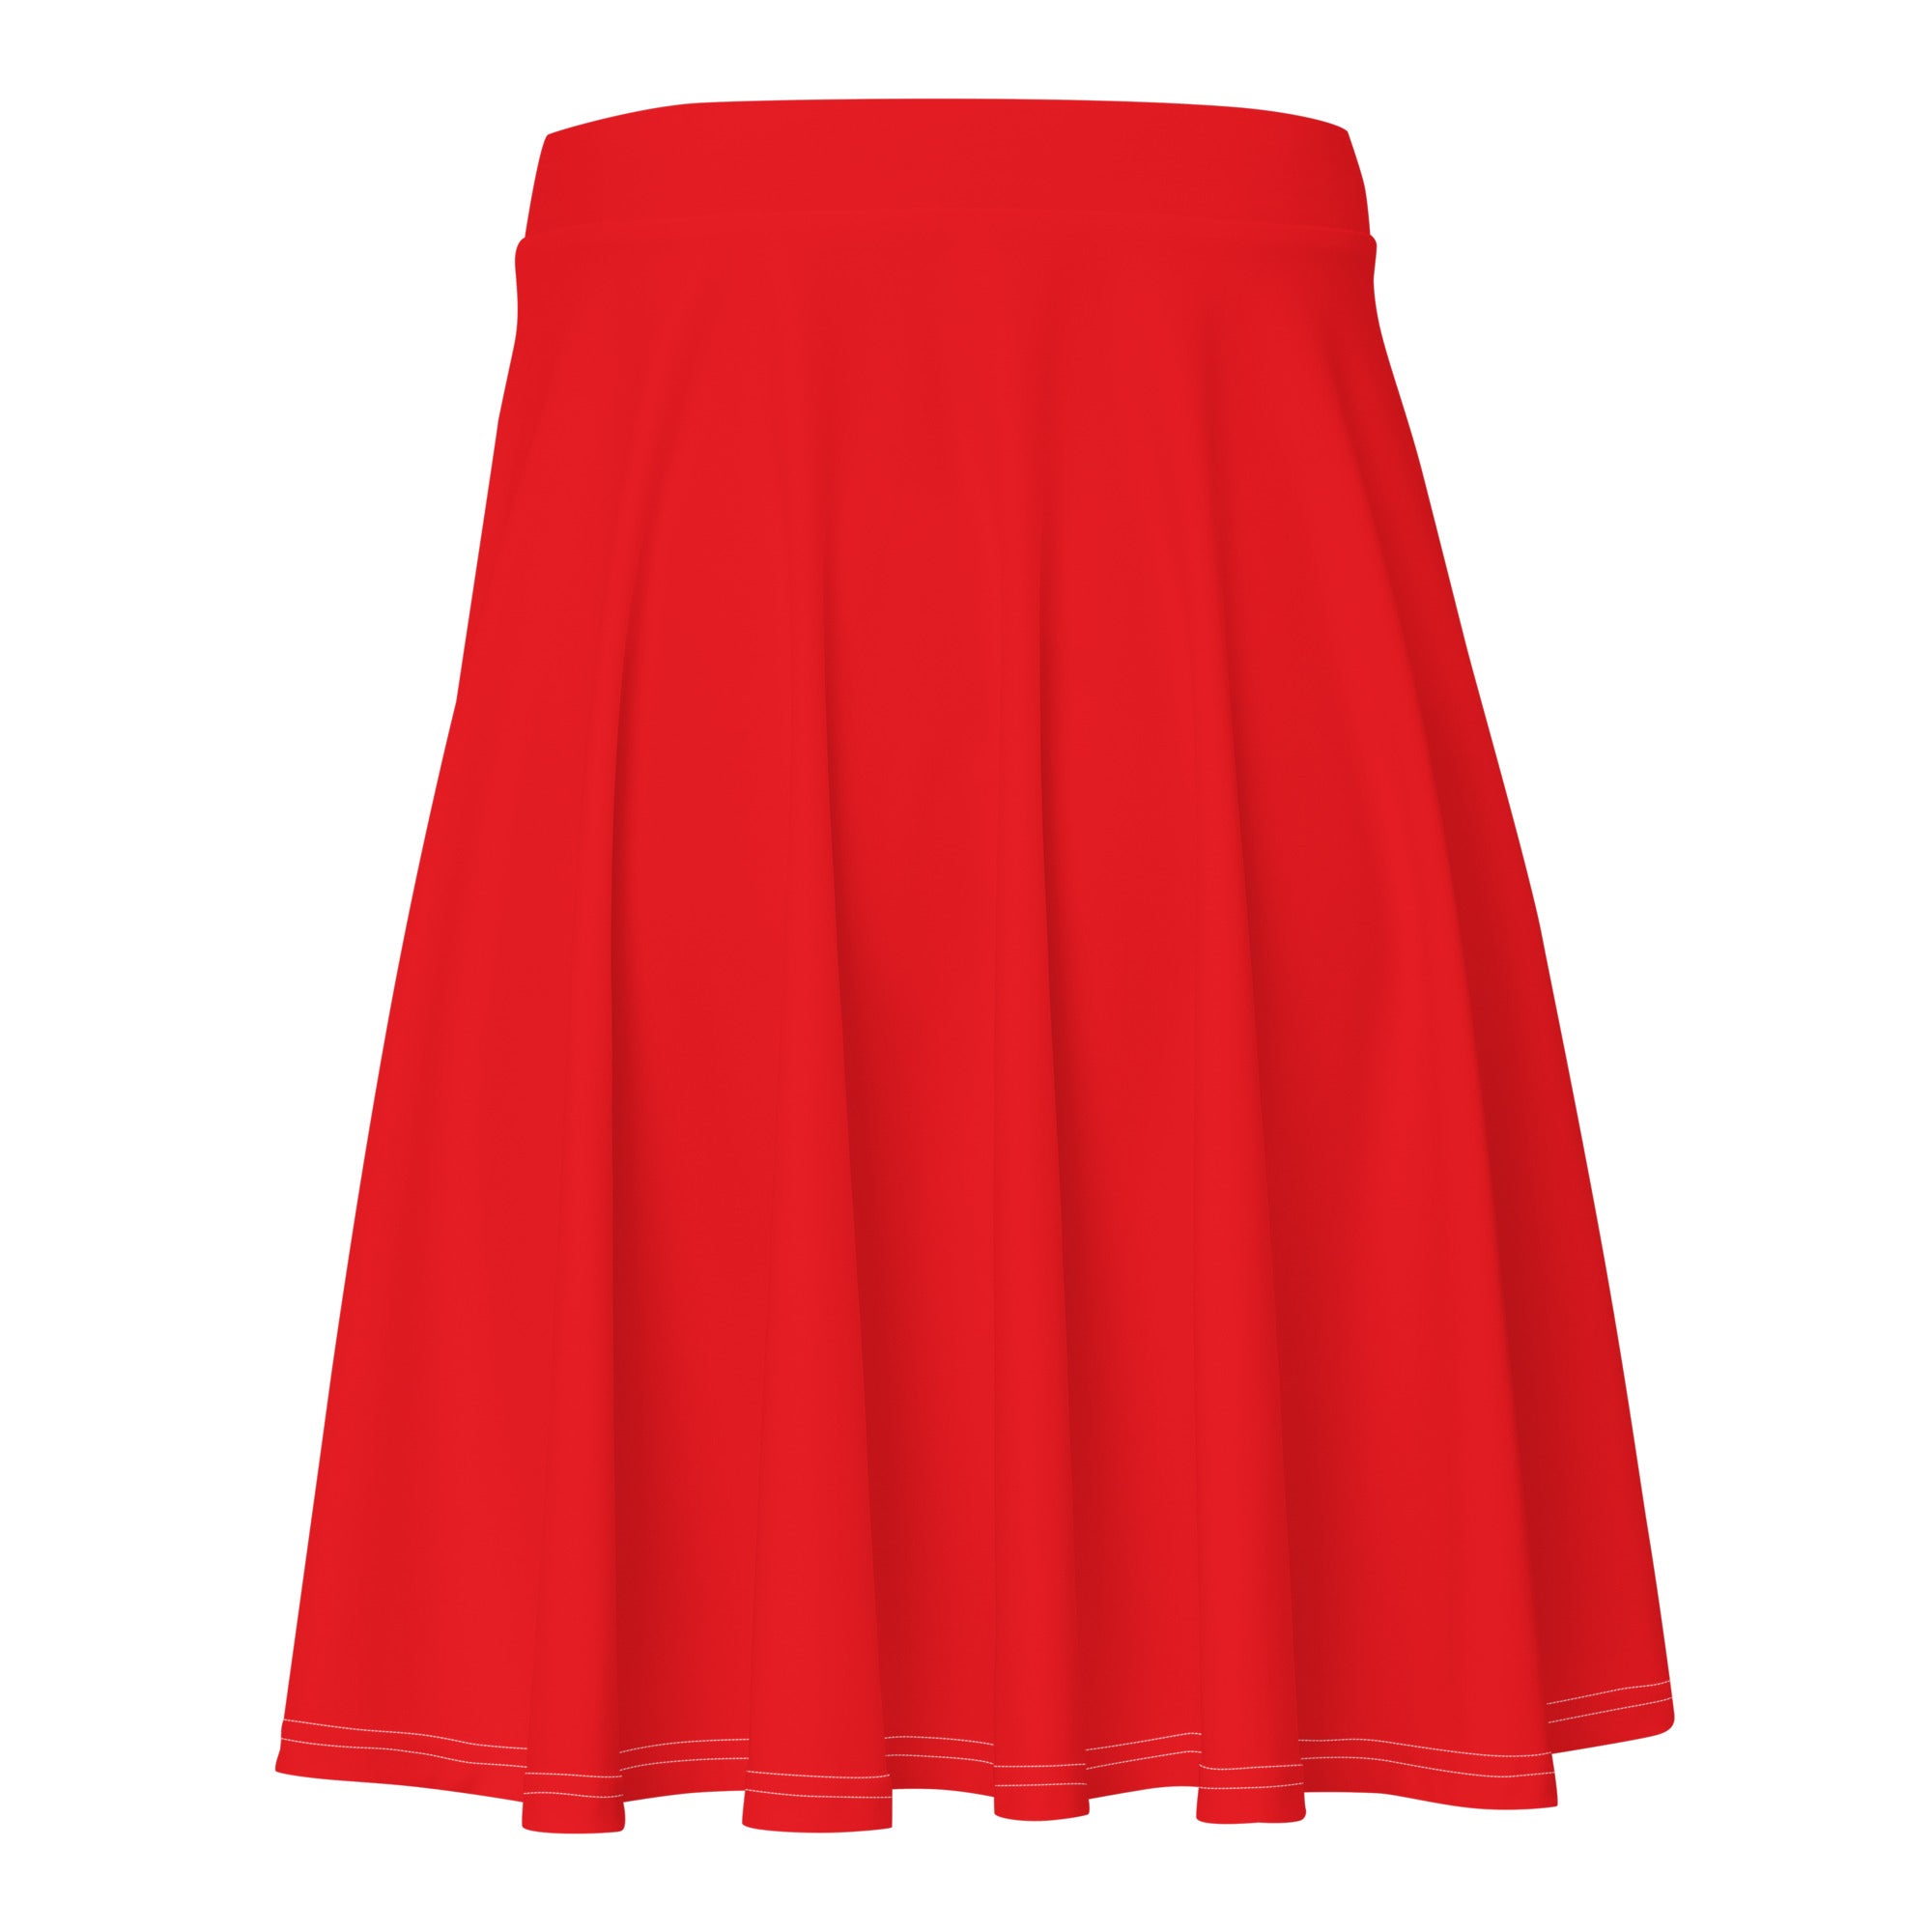 Red - Skater Skirt - Skater Skirt - DRAGON FOXX™ - Red - Skater Skirt - 8815871_9606 - XS - Red - Dragon Foxx™ - Dragon Foxx™ Red - Skater Skirt - Dragon Foxx™ Skater Skirt